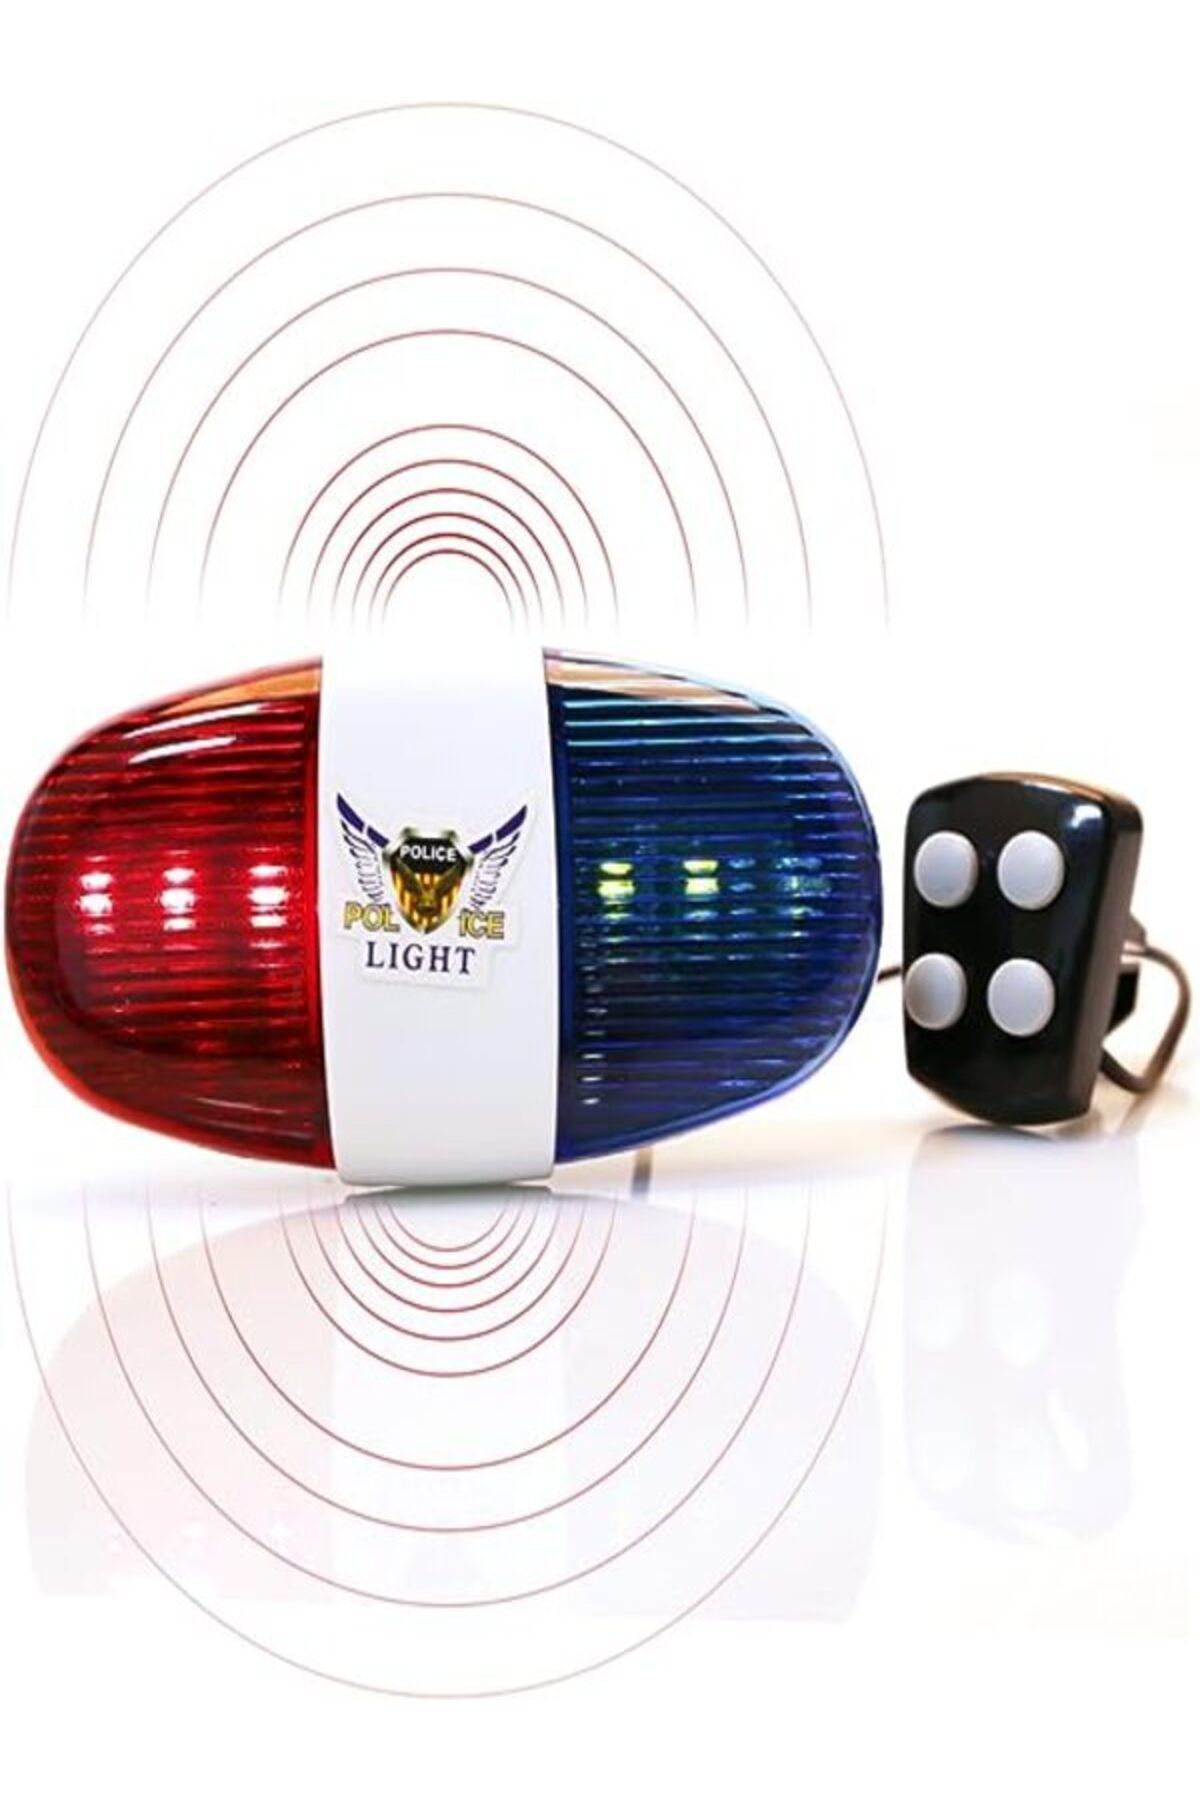 Tex Polis Kornası 6 Farklı Led Işık Modu 4 Farklı Yüksek Siren Sesi Kaliteli Abs Plastik (PİLİ YANINDA)